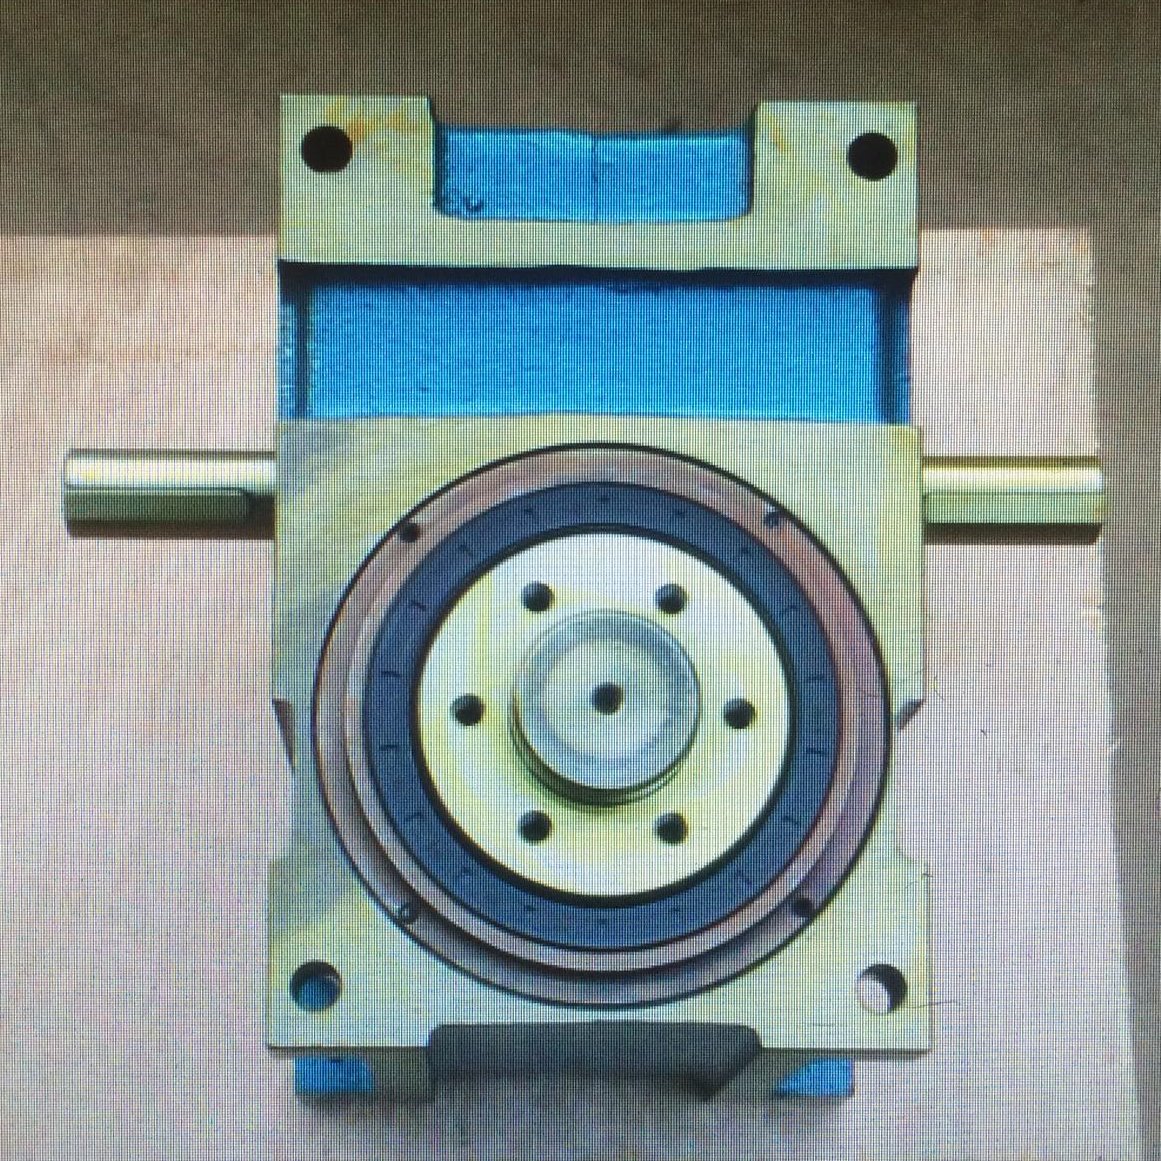 厂家直销 激光切割机 选购一款放心使用 步进器 利诺 凸轮分割器1